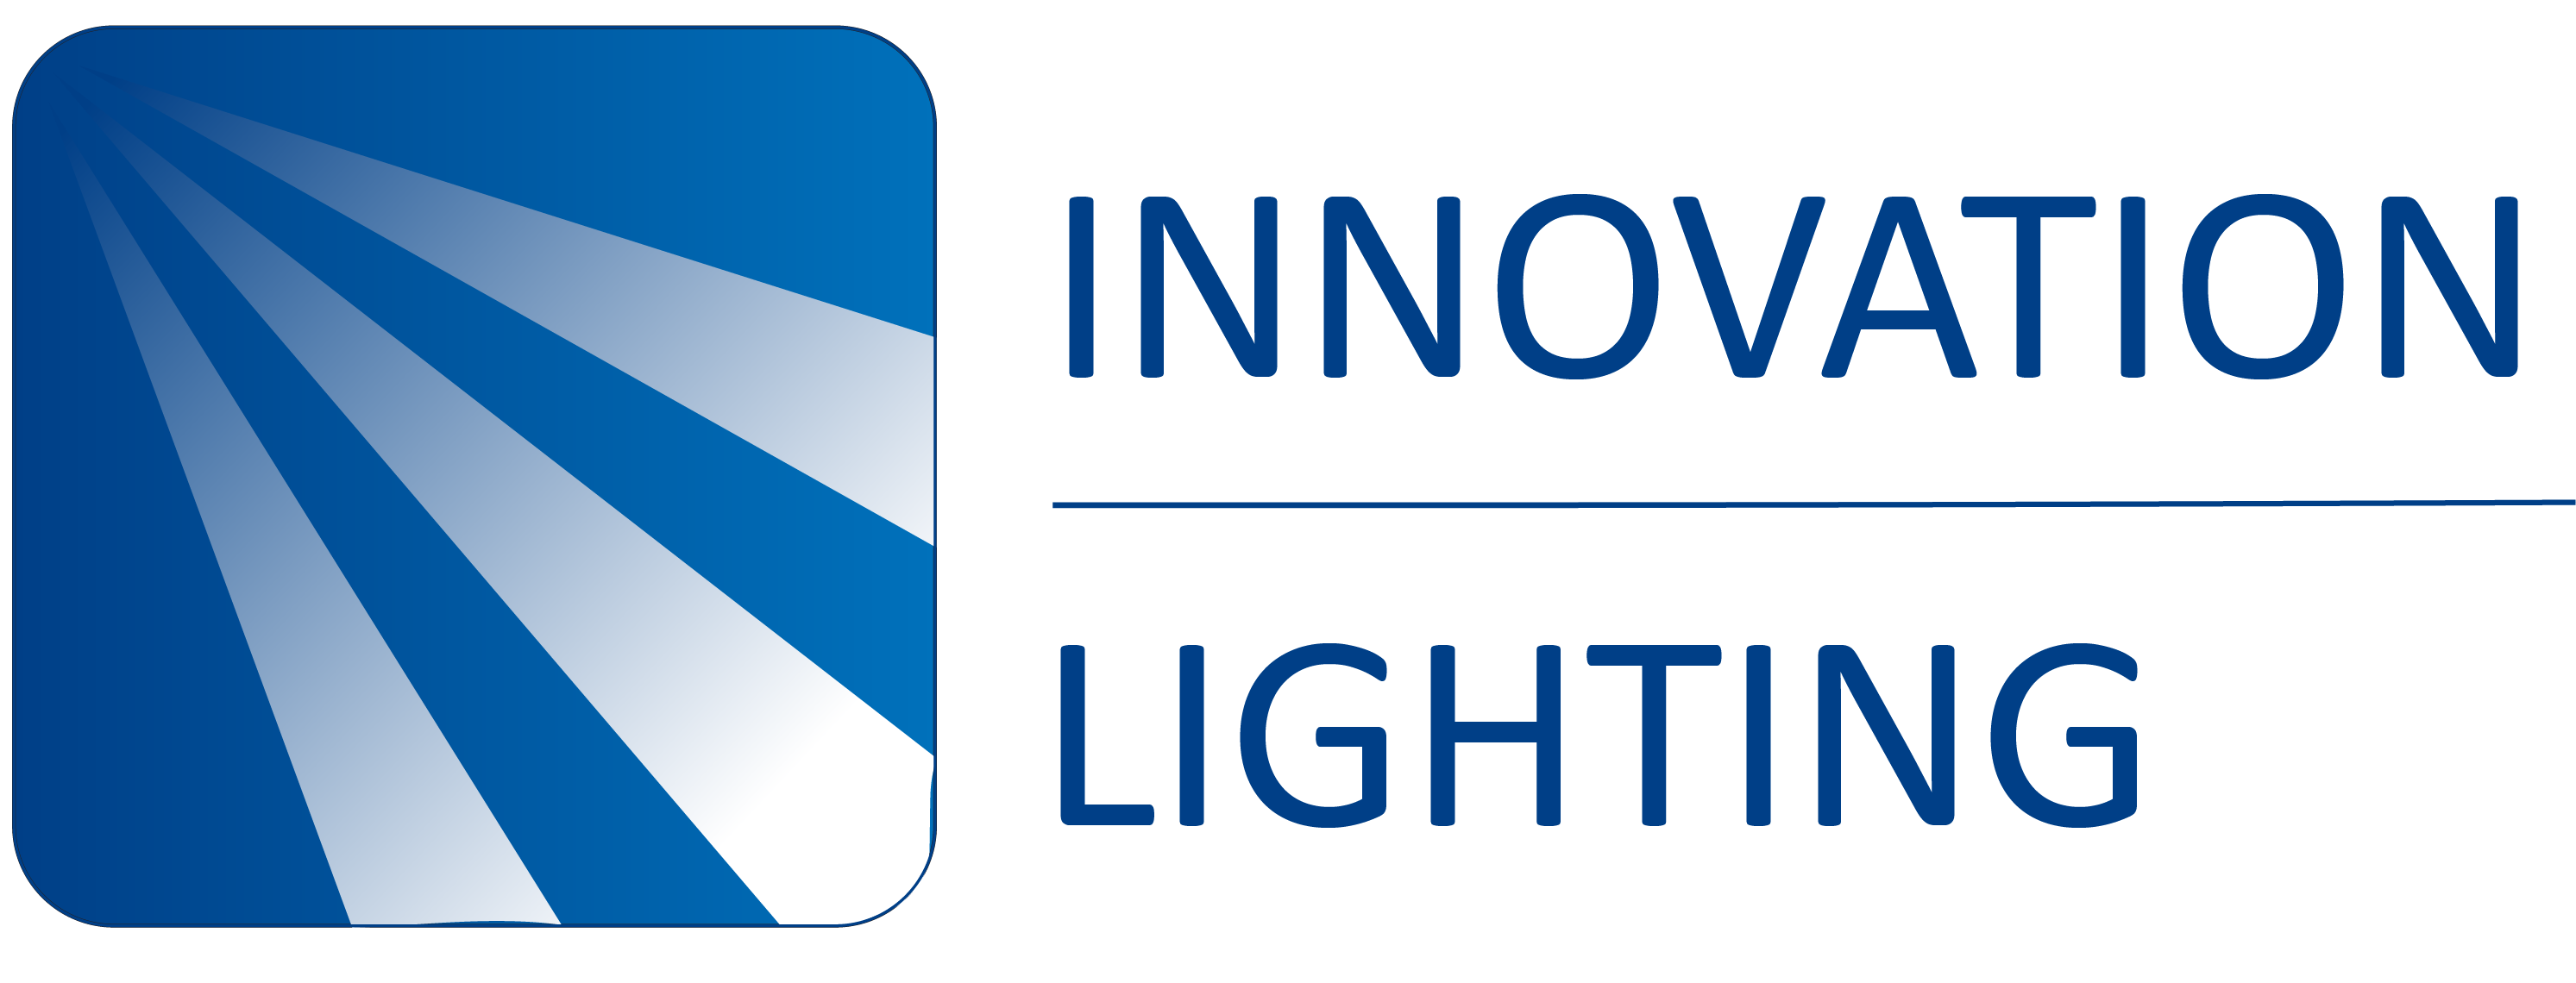 Innovation Lighting